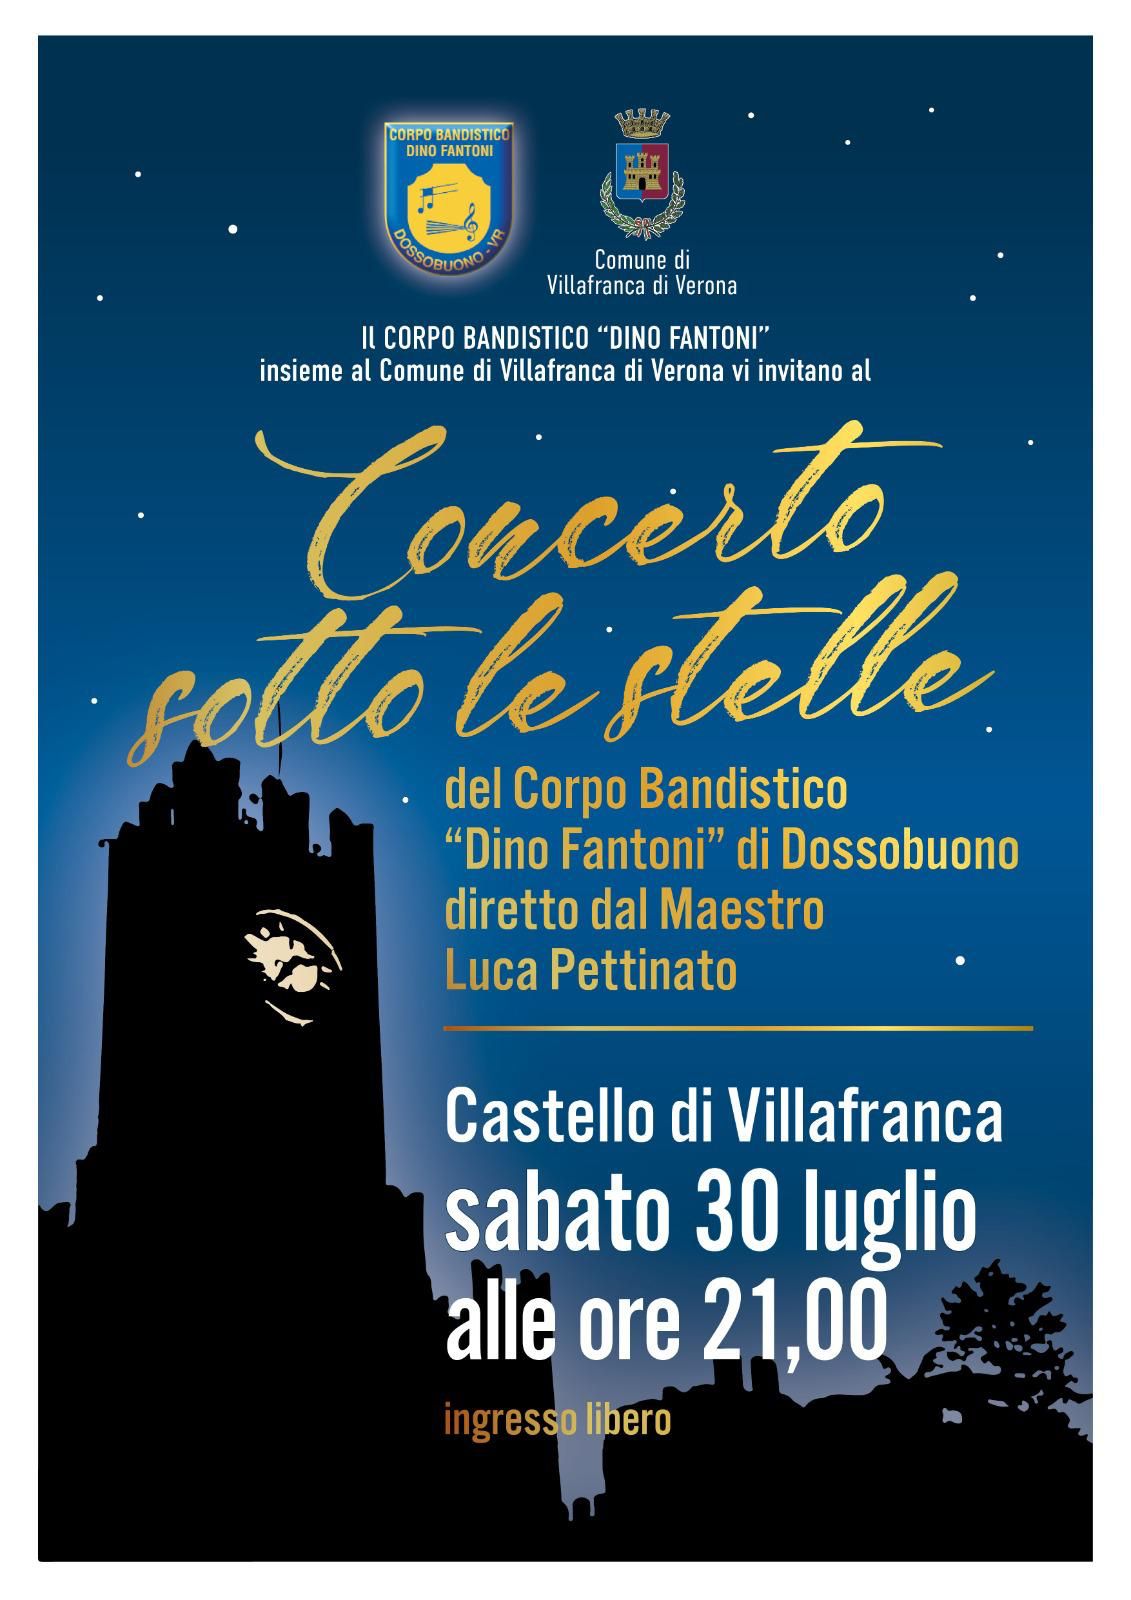 Sabato 30 luglio al Castello Scaligero Concerto sotto le stelle.